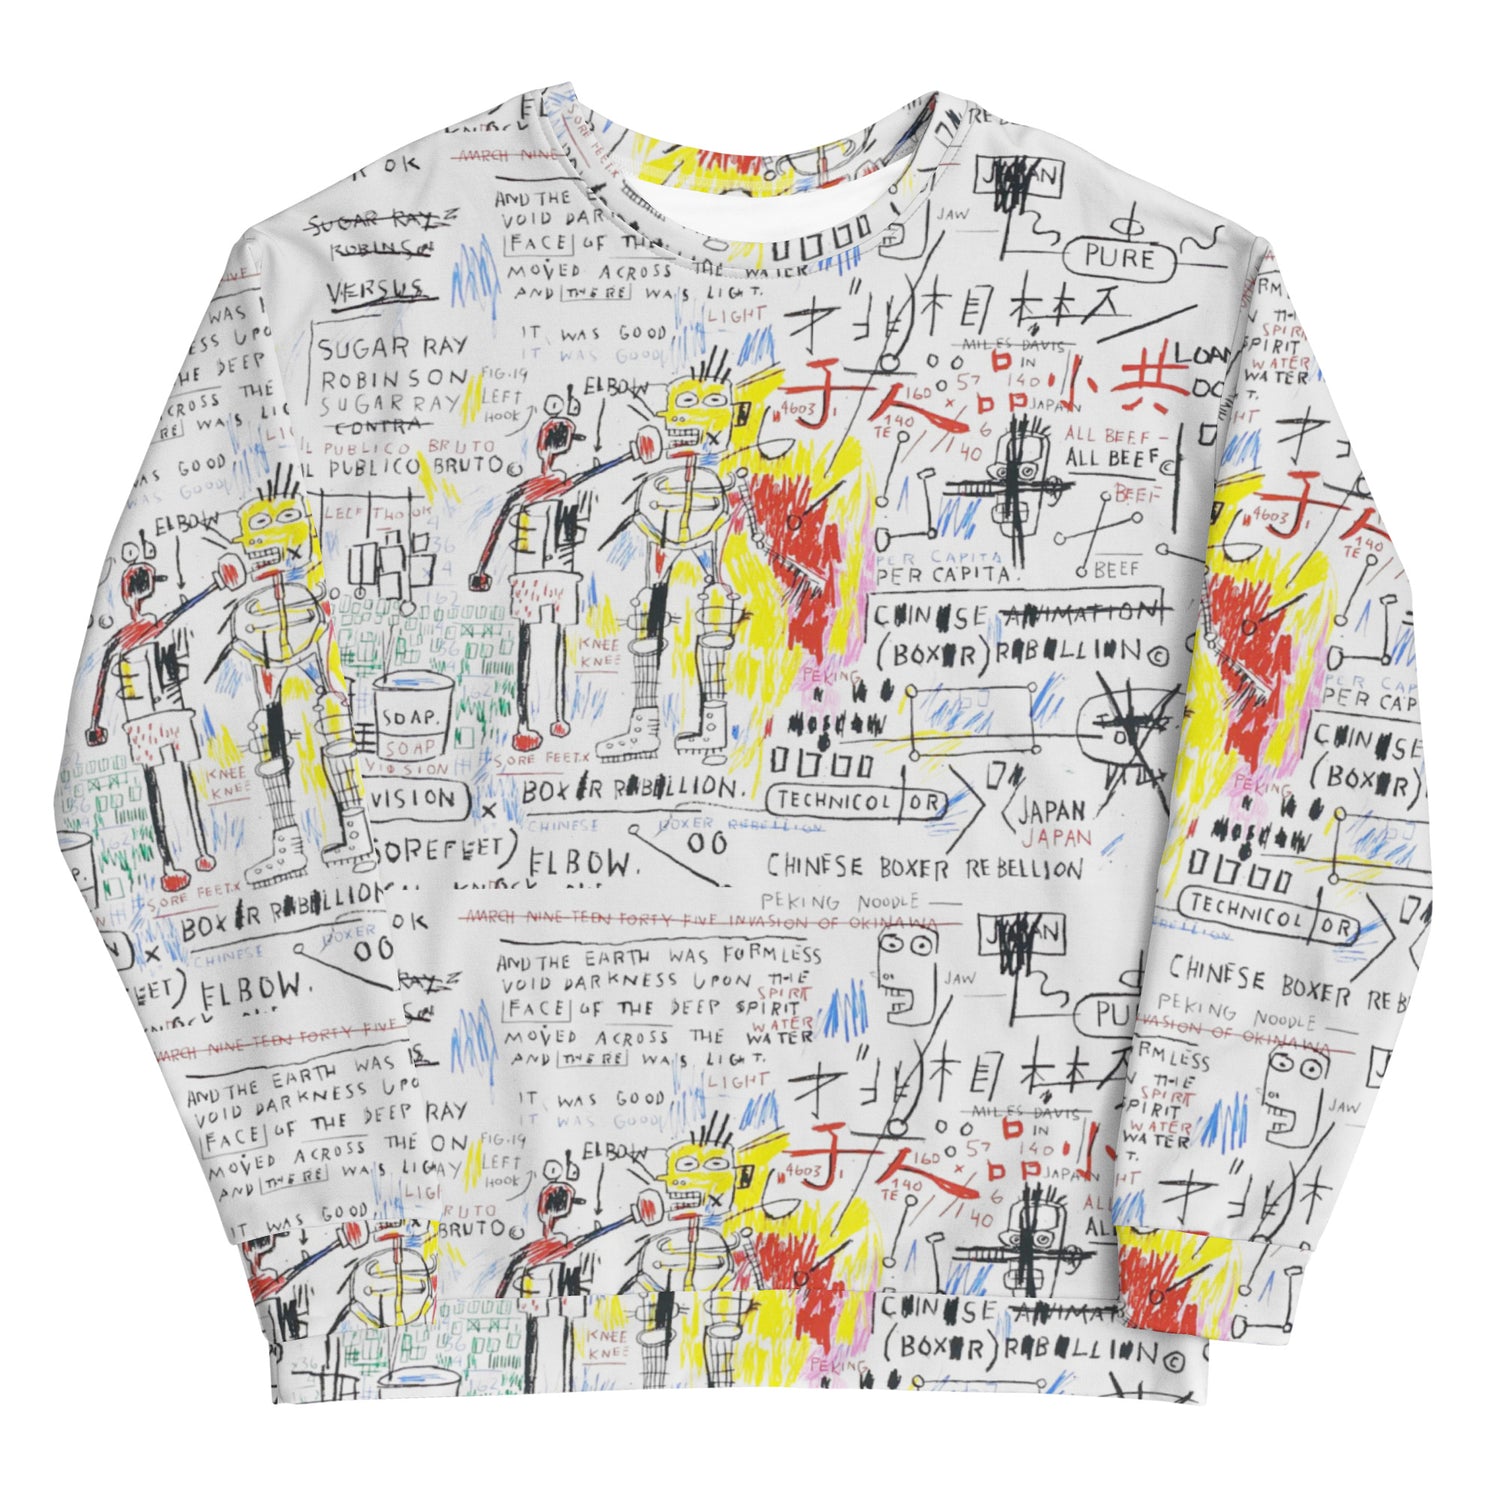 Jean-Michel Basquiat "Boxer Rebellion" Artwork Printed Premium Streetwear Crewneck Sweatshirt Harajuku Graffiti